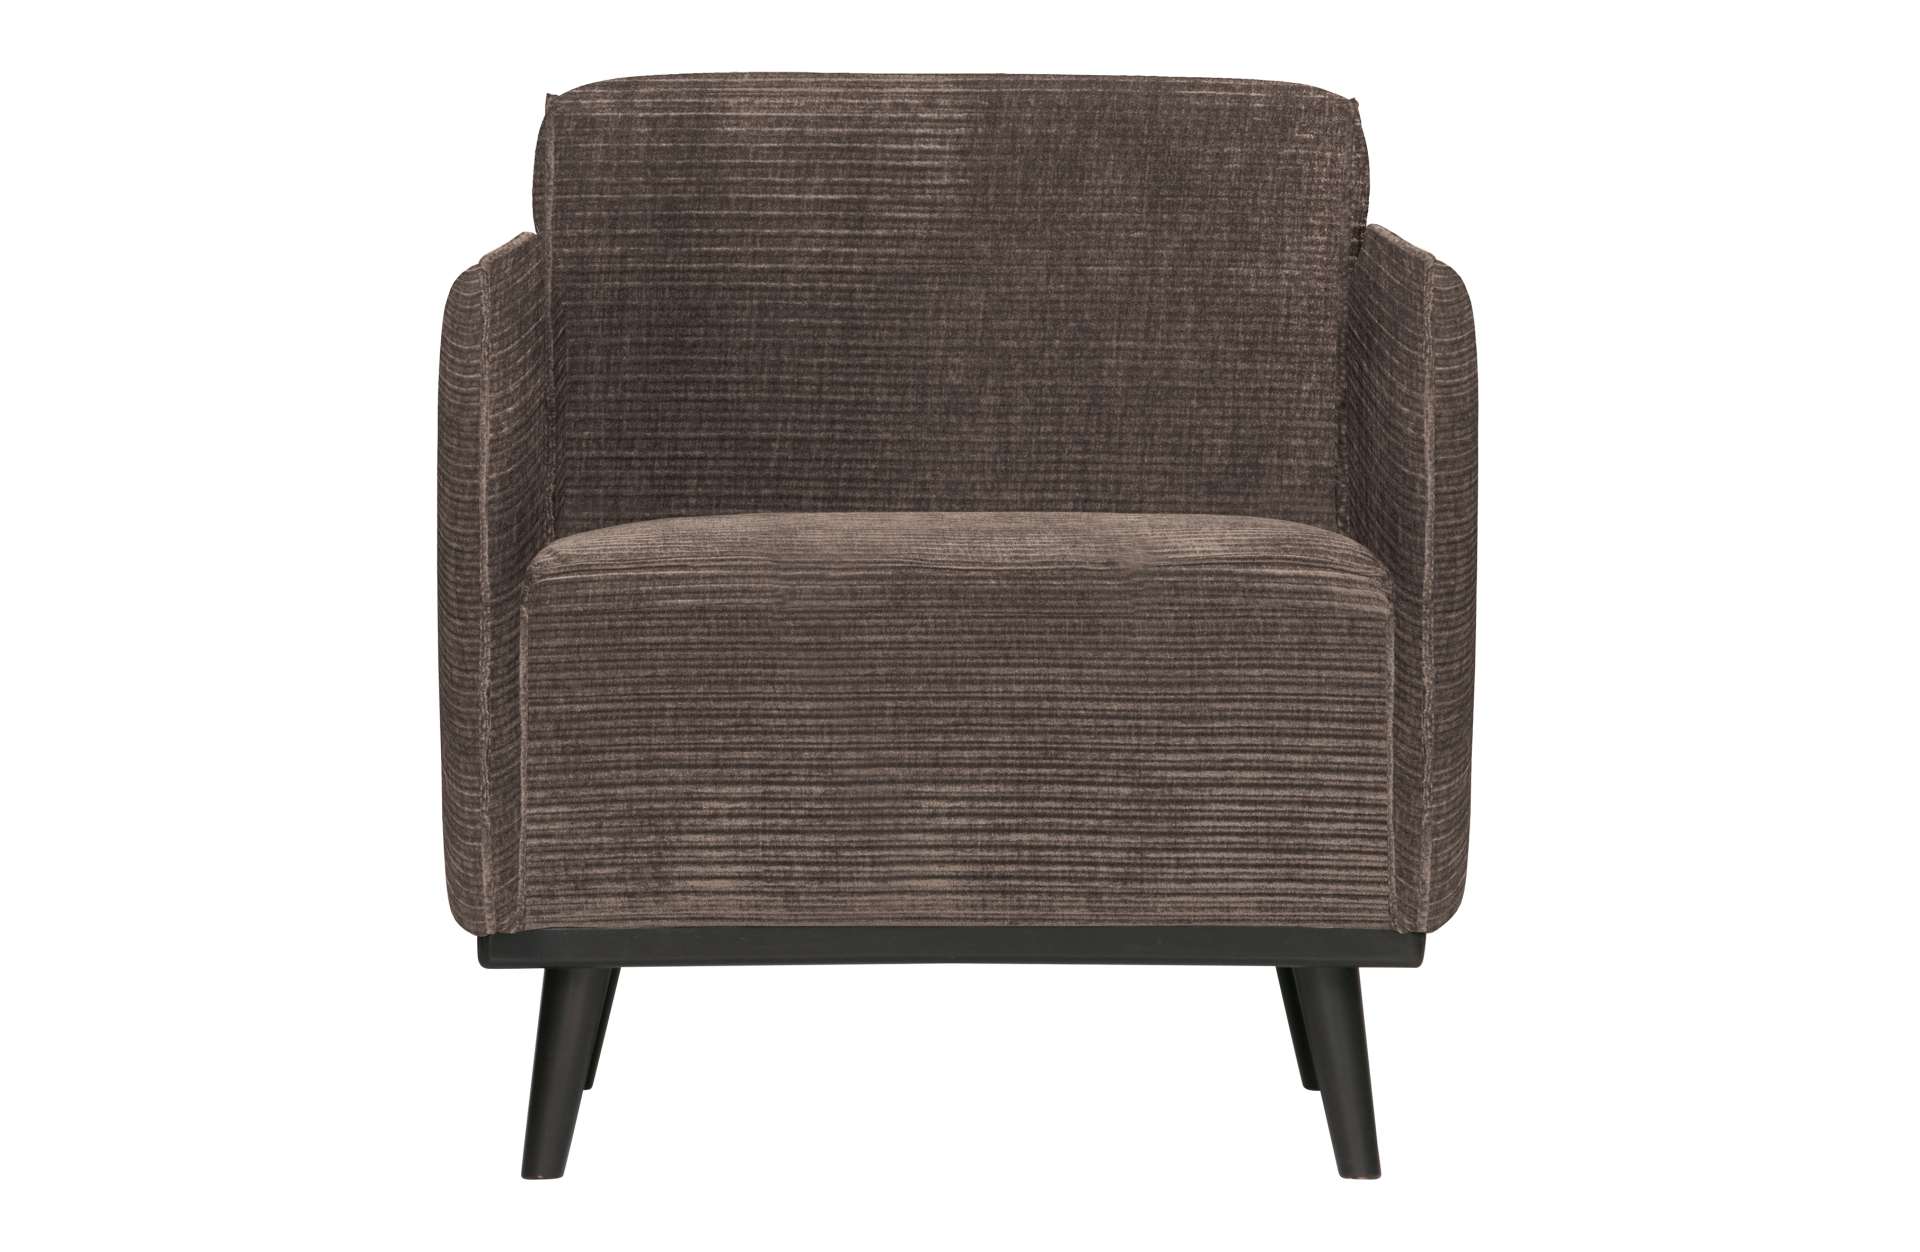 Der Sessel Statement überzeugt mit seinem modernen Design. Gefertigt wurde er aus gewebten Jacquard, welches einen Taupe Farbton besitzen. Das Gestell ist aus Birkenholz und hat eine schwarze Farbe. Der Hocker hat eine Sitzhöhe von 46 cm.